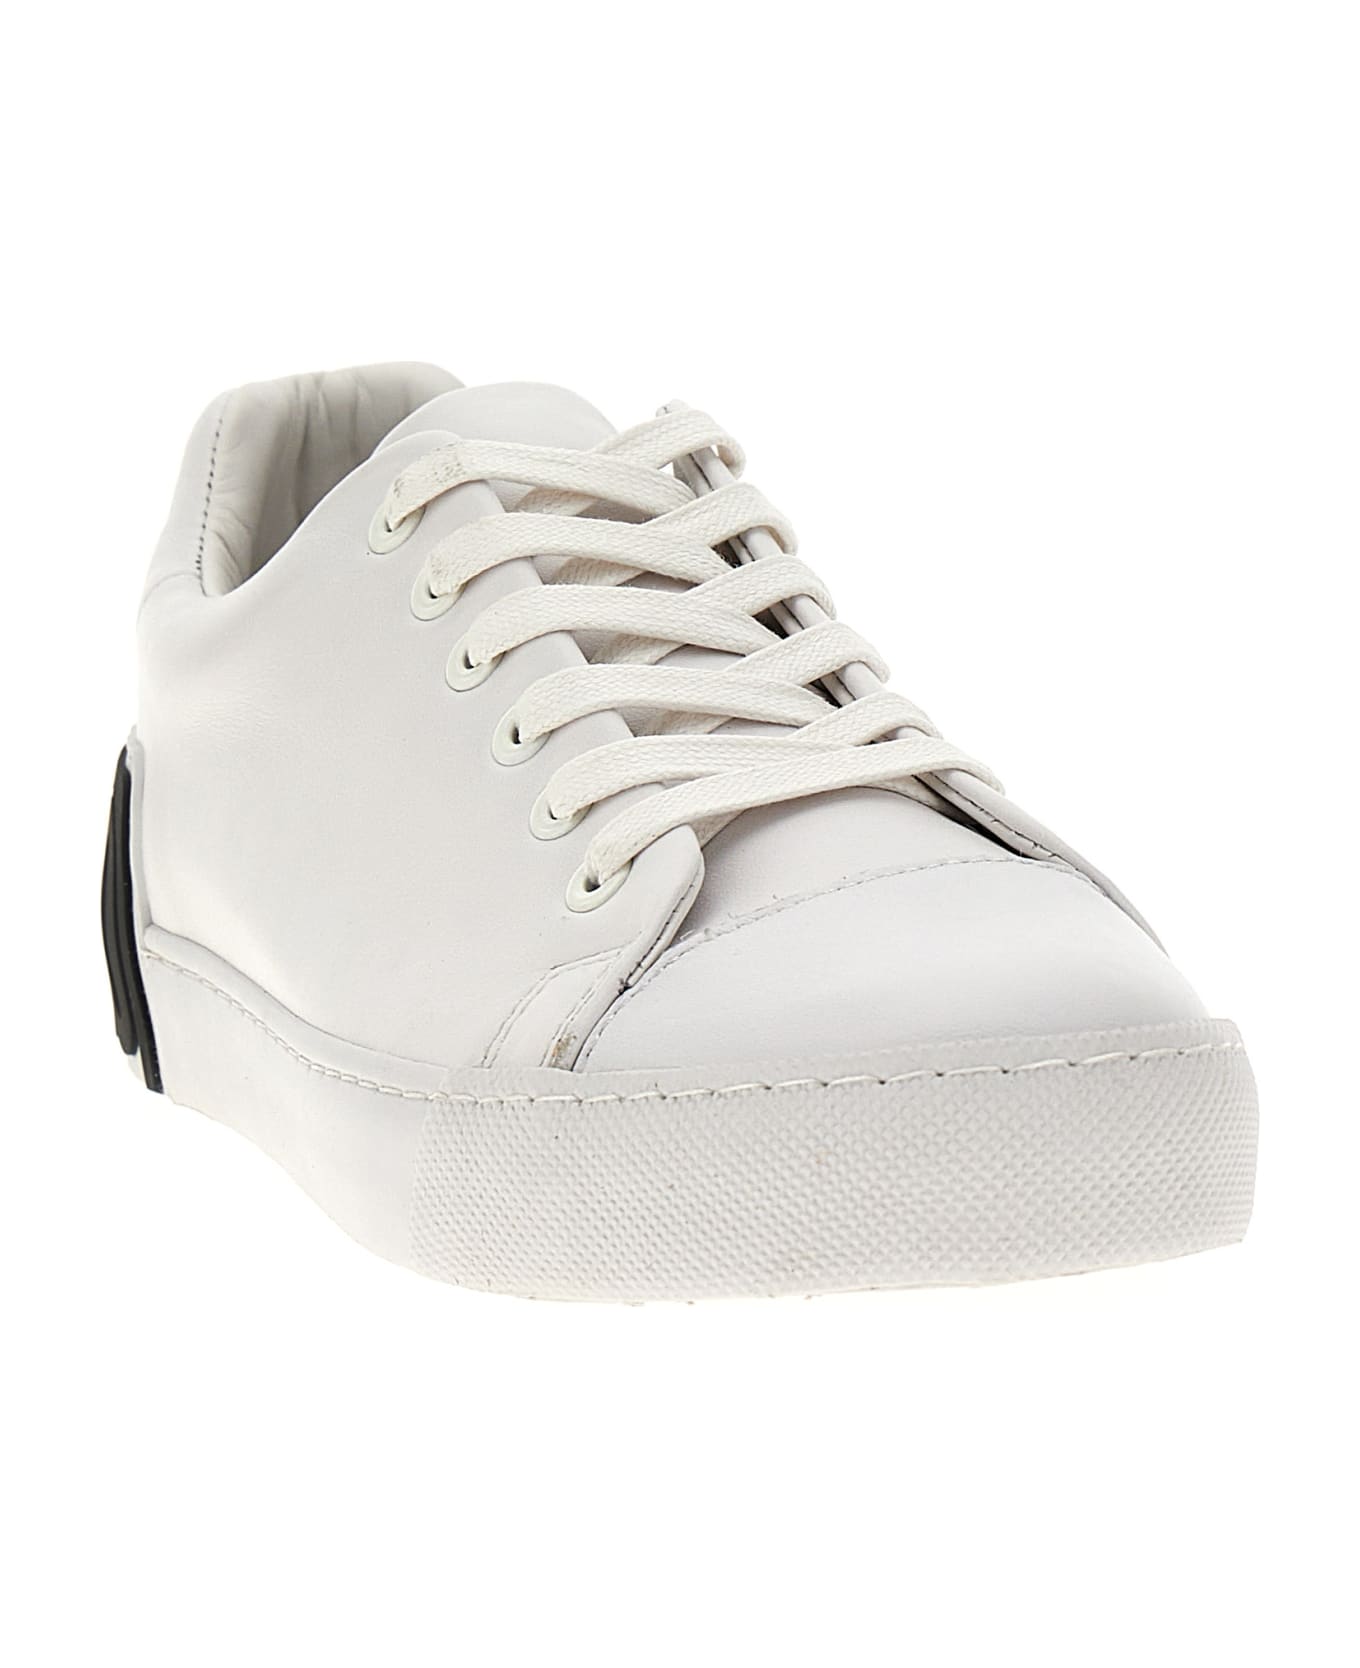 Moschino Logo Sneakers - White/Black